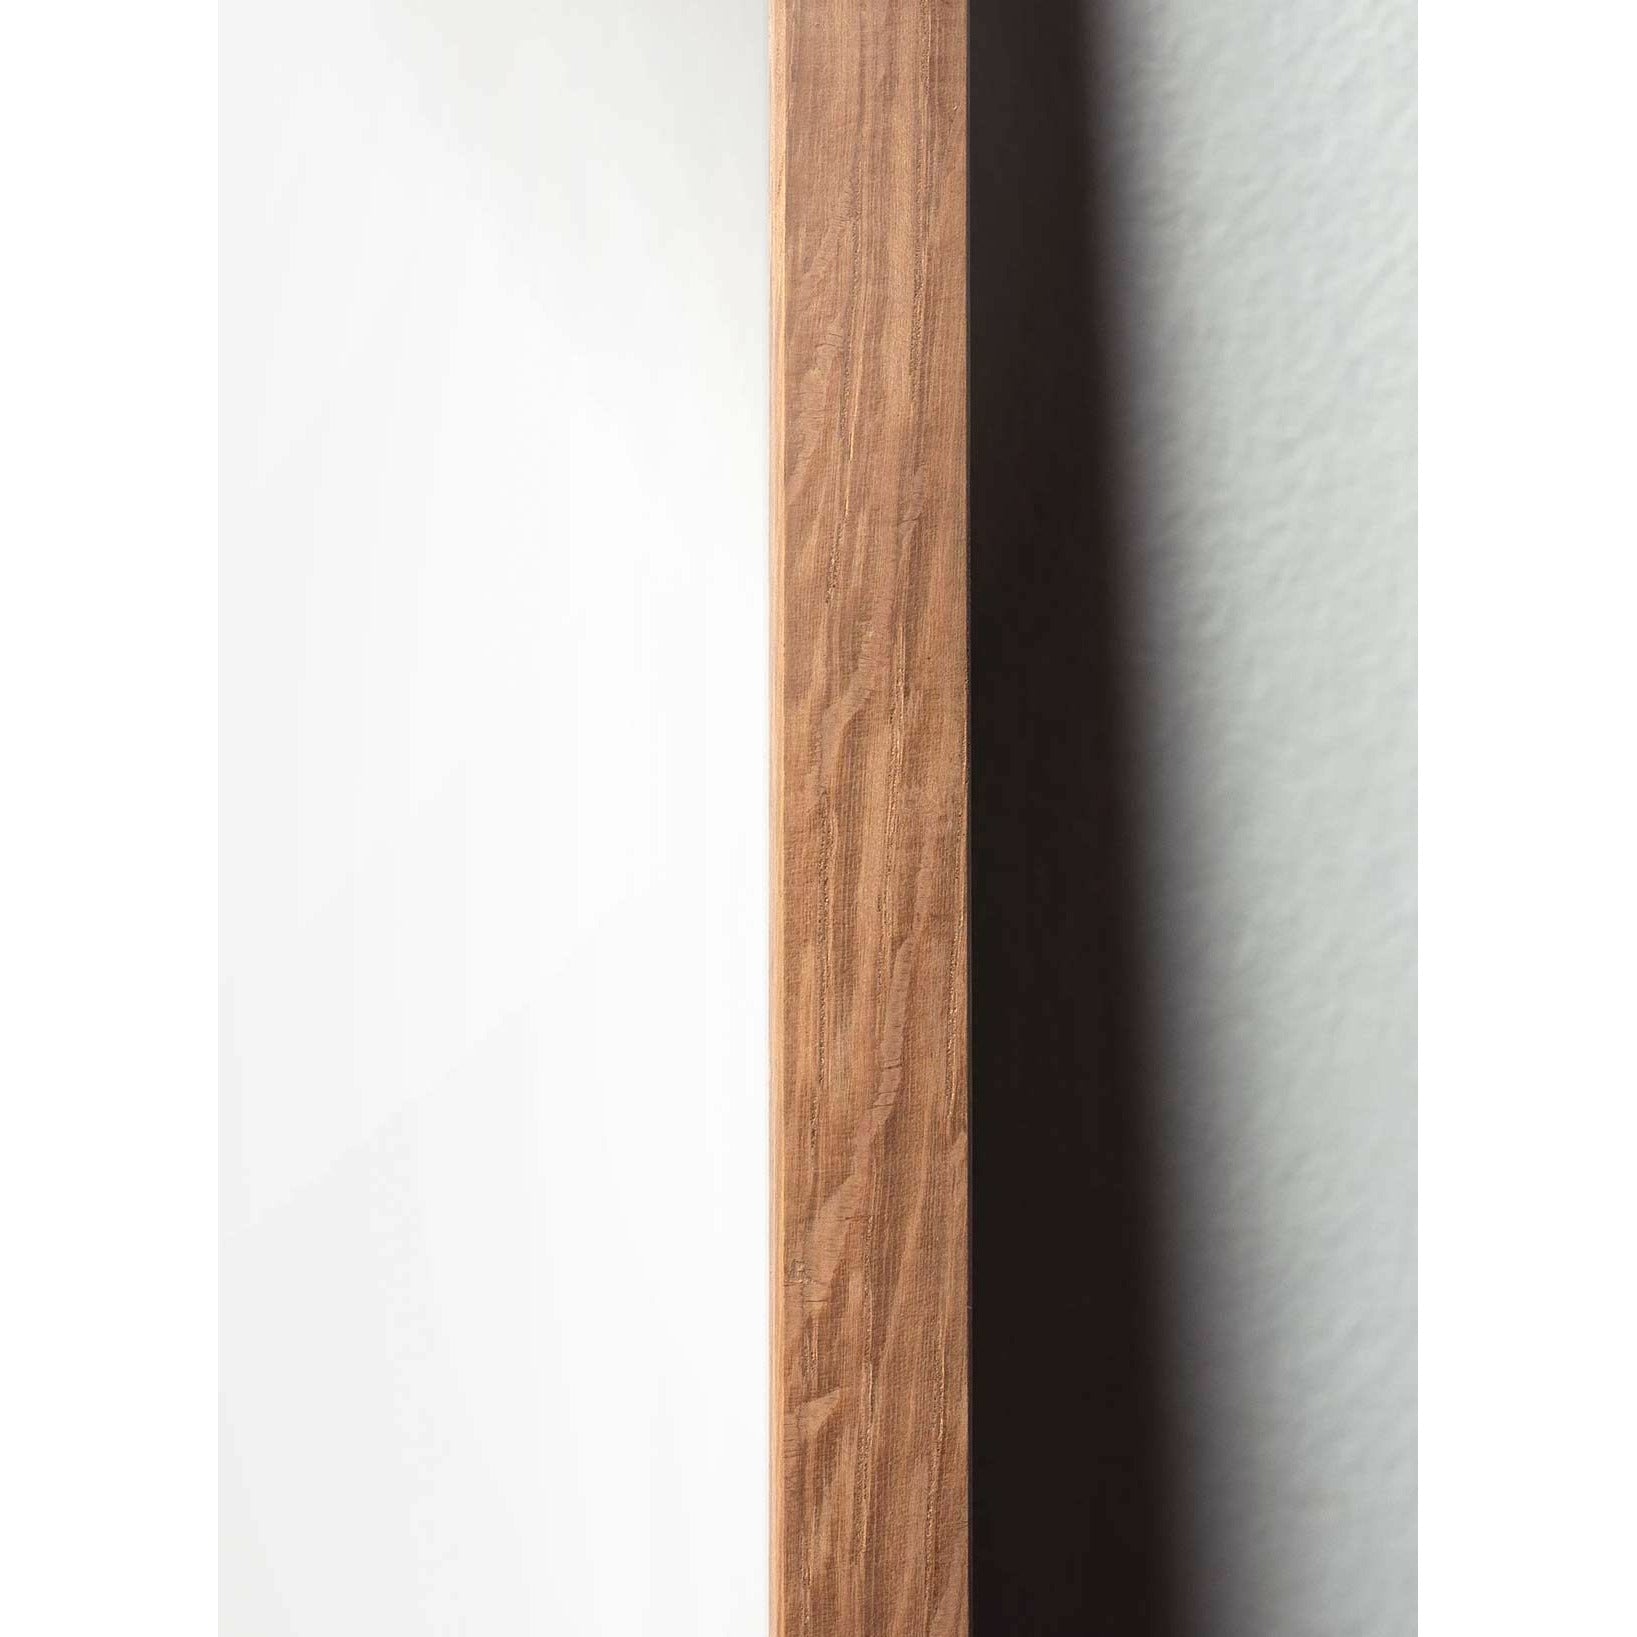 brainchild Pine Cone -klassinen juliste, kehys, joka on valmistettu kevyestä puusta 30x40 cm, hiekanvärinen tausta